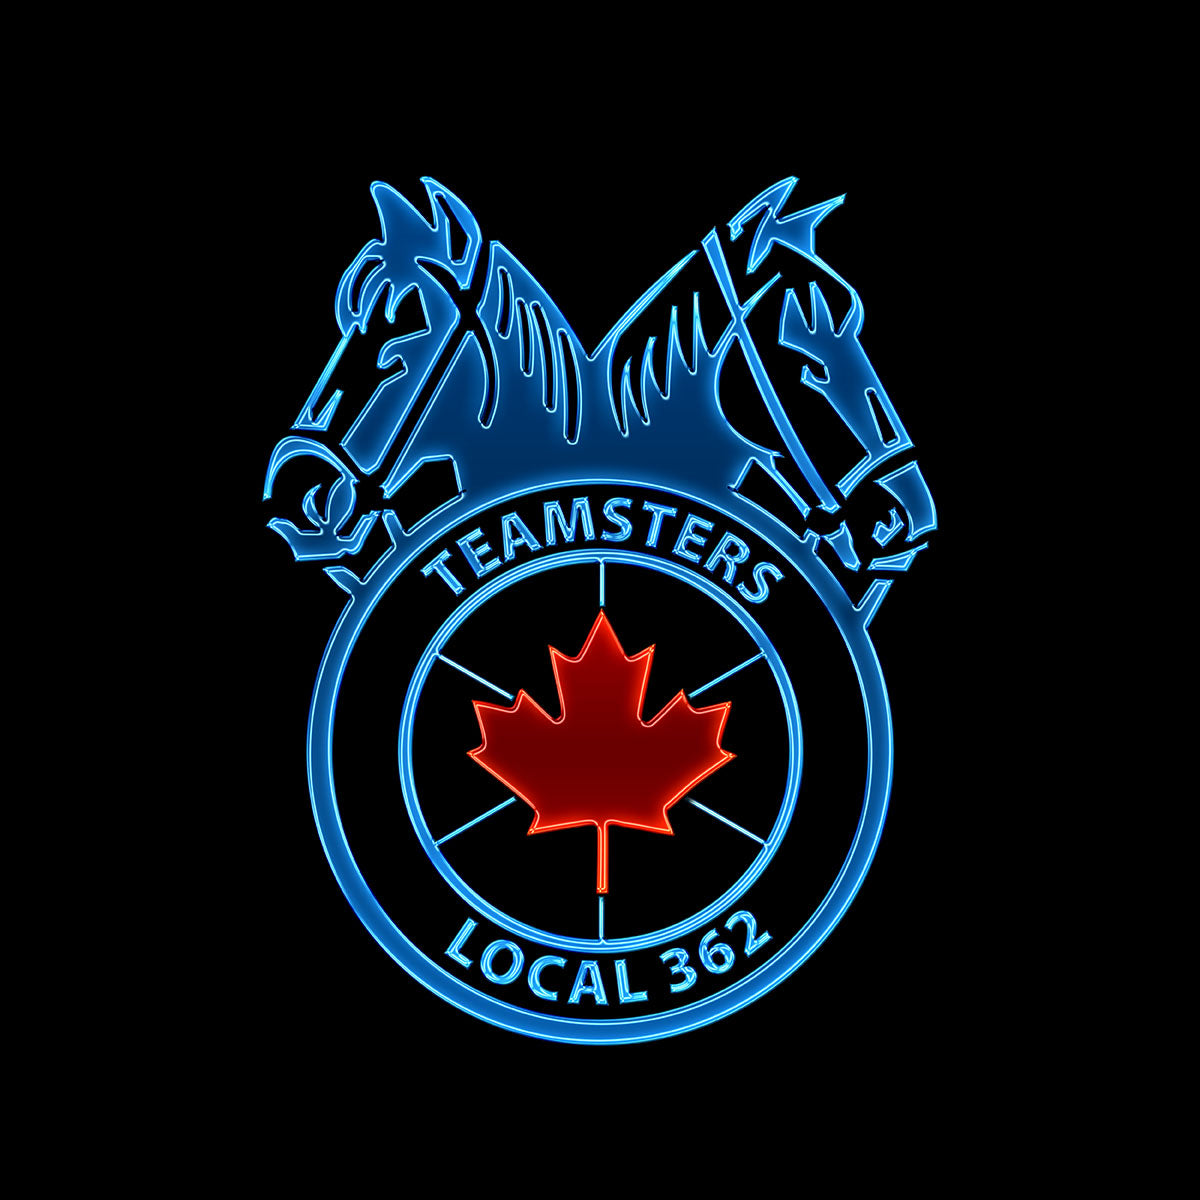 Teamsters 362 - Neon Logo Apparel